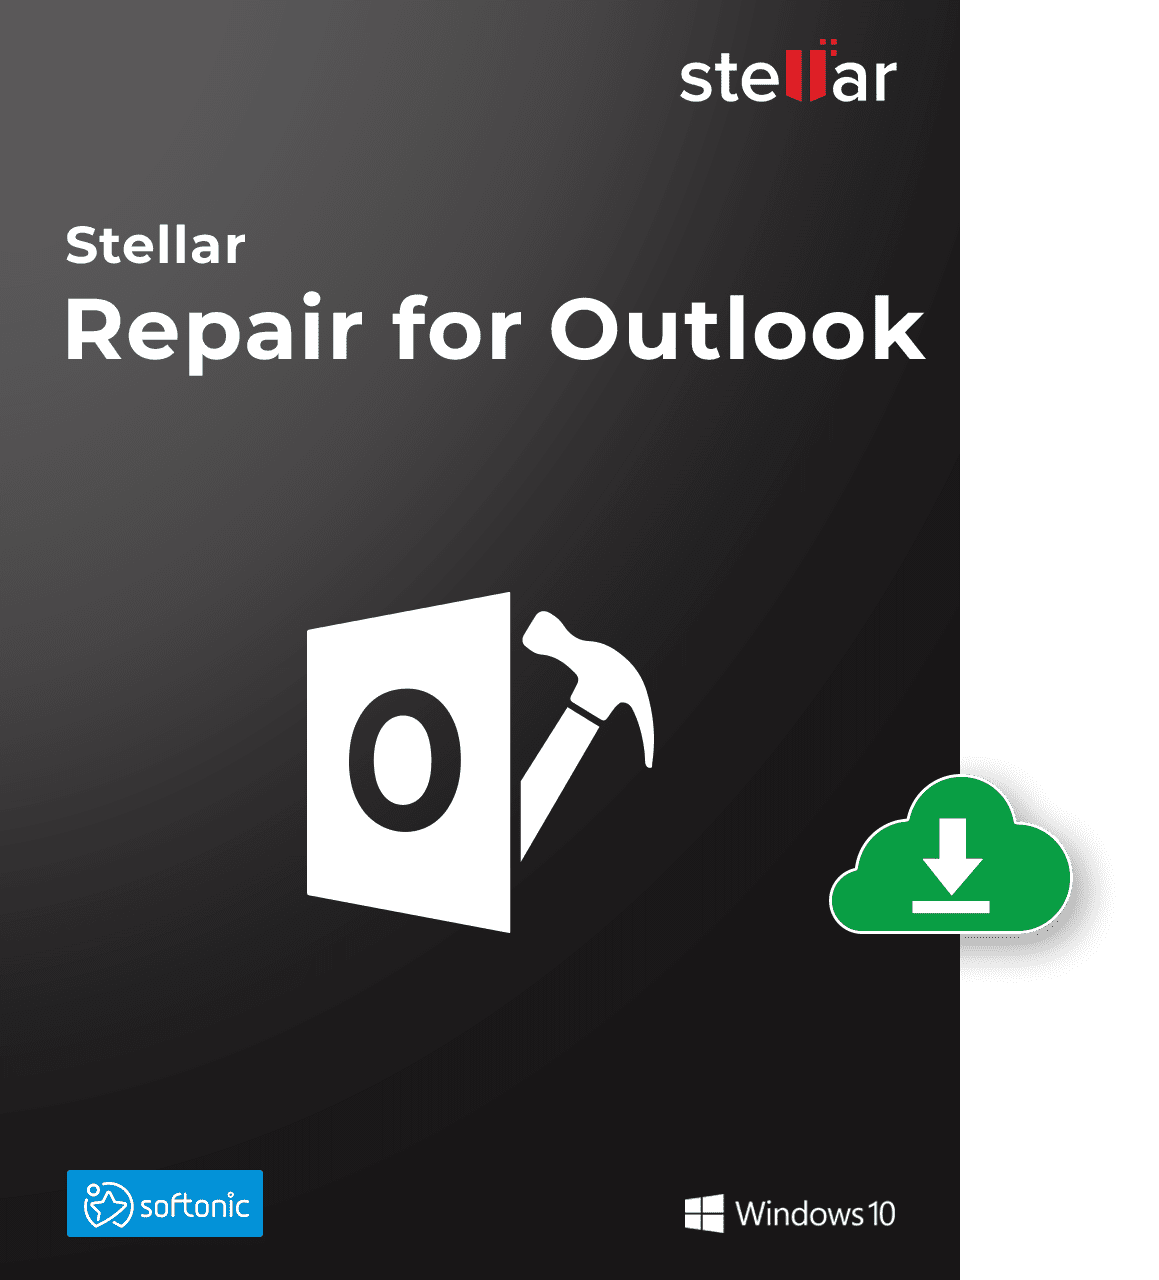 Stellar Repair for Outlook Professional